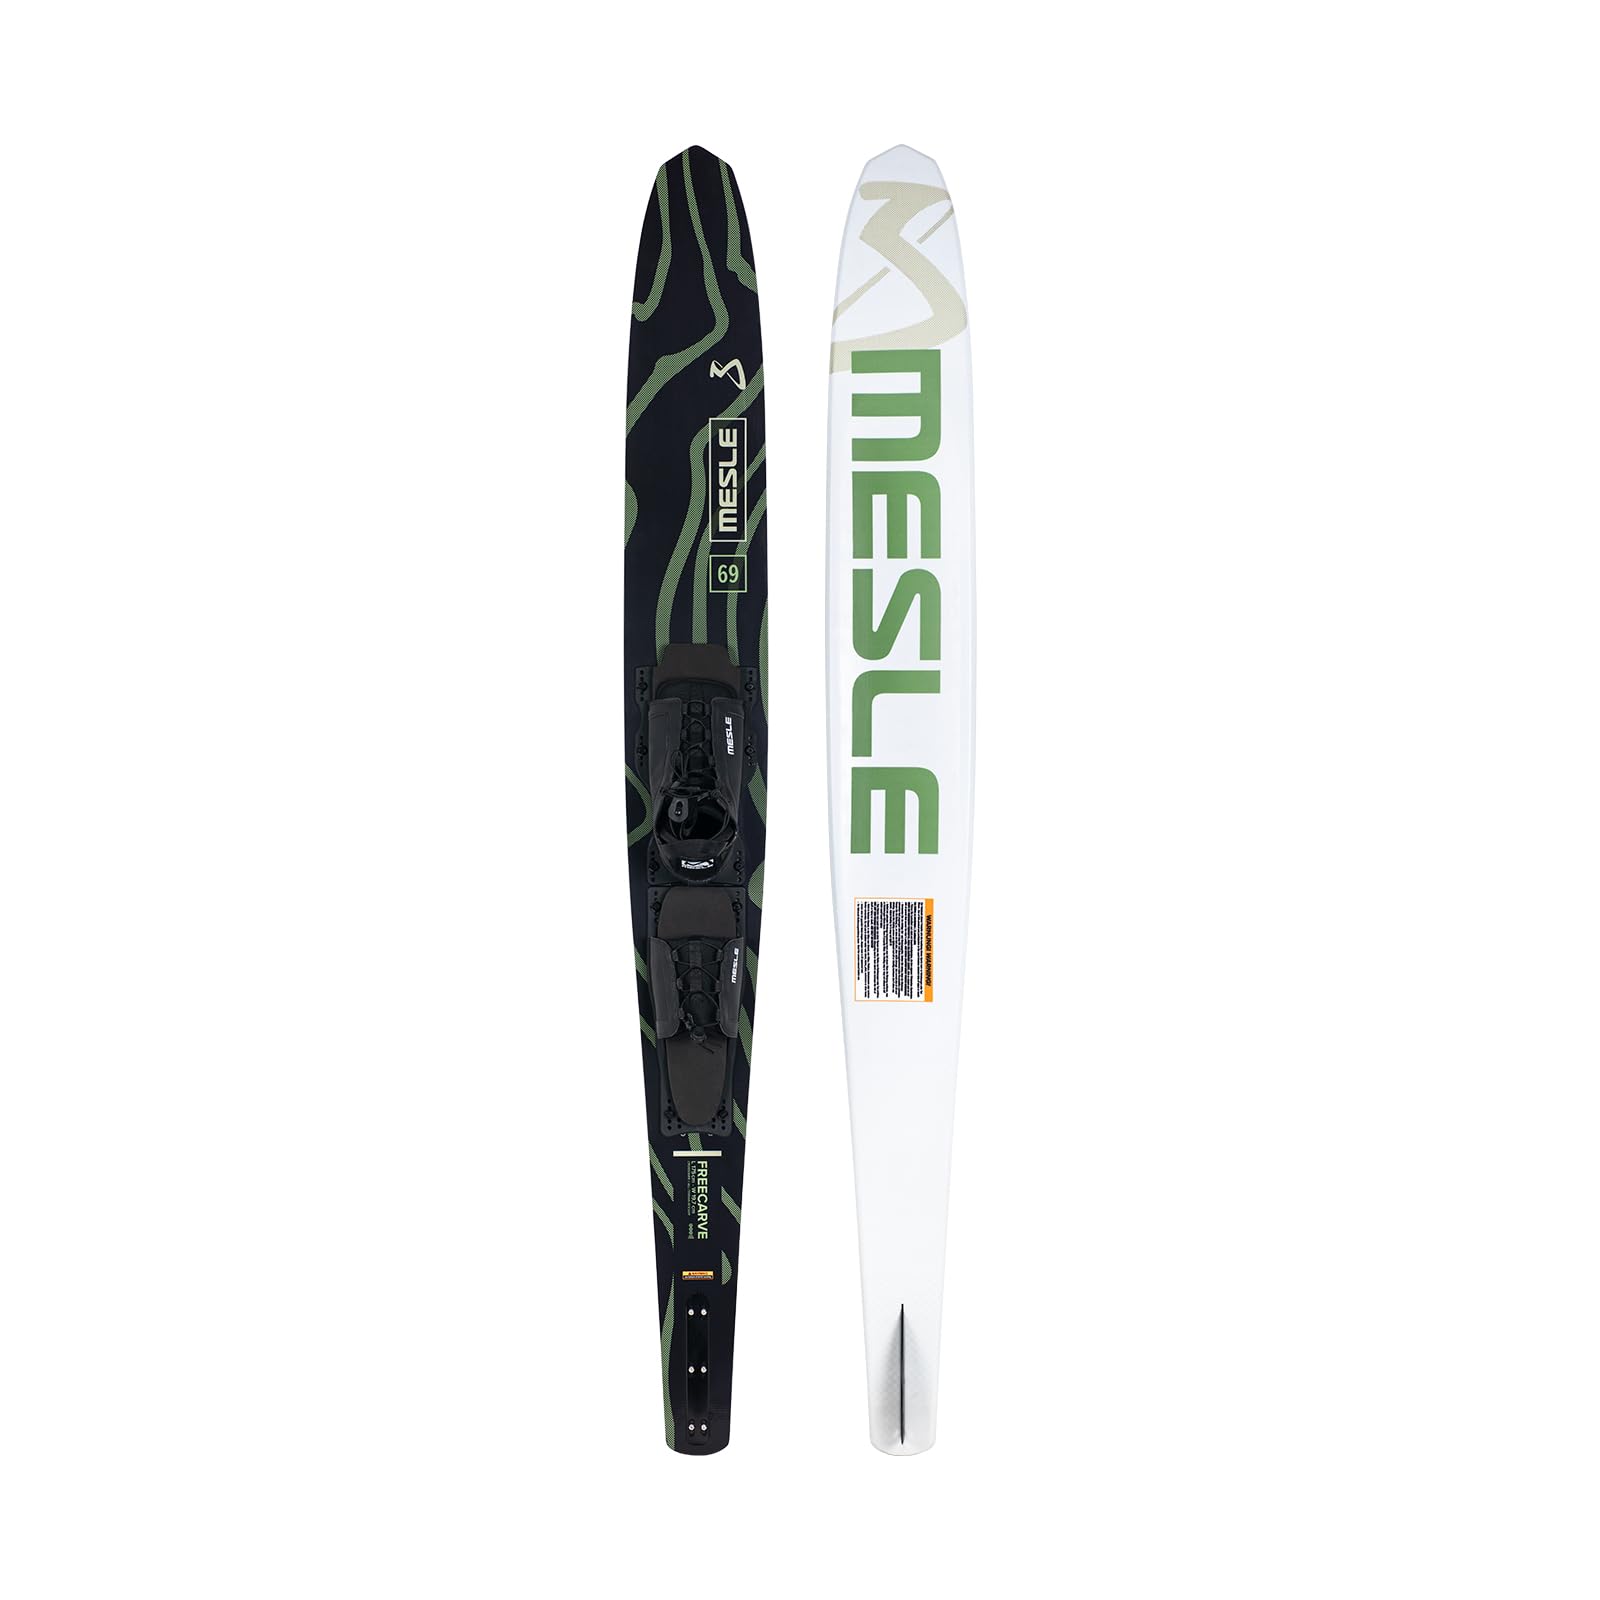 Mesle Mono Wasserski Freecarve mit B6.2 Bindung, Slalom Wasserski bis 120 kg, Tunnel Mono-Wasserski für Anfänger bis ambitionierte Slalom-Fahrer, Jugendliche Erwachsene